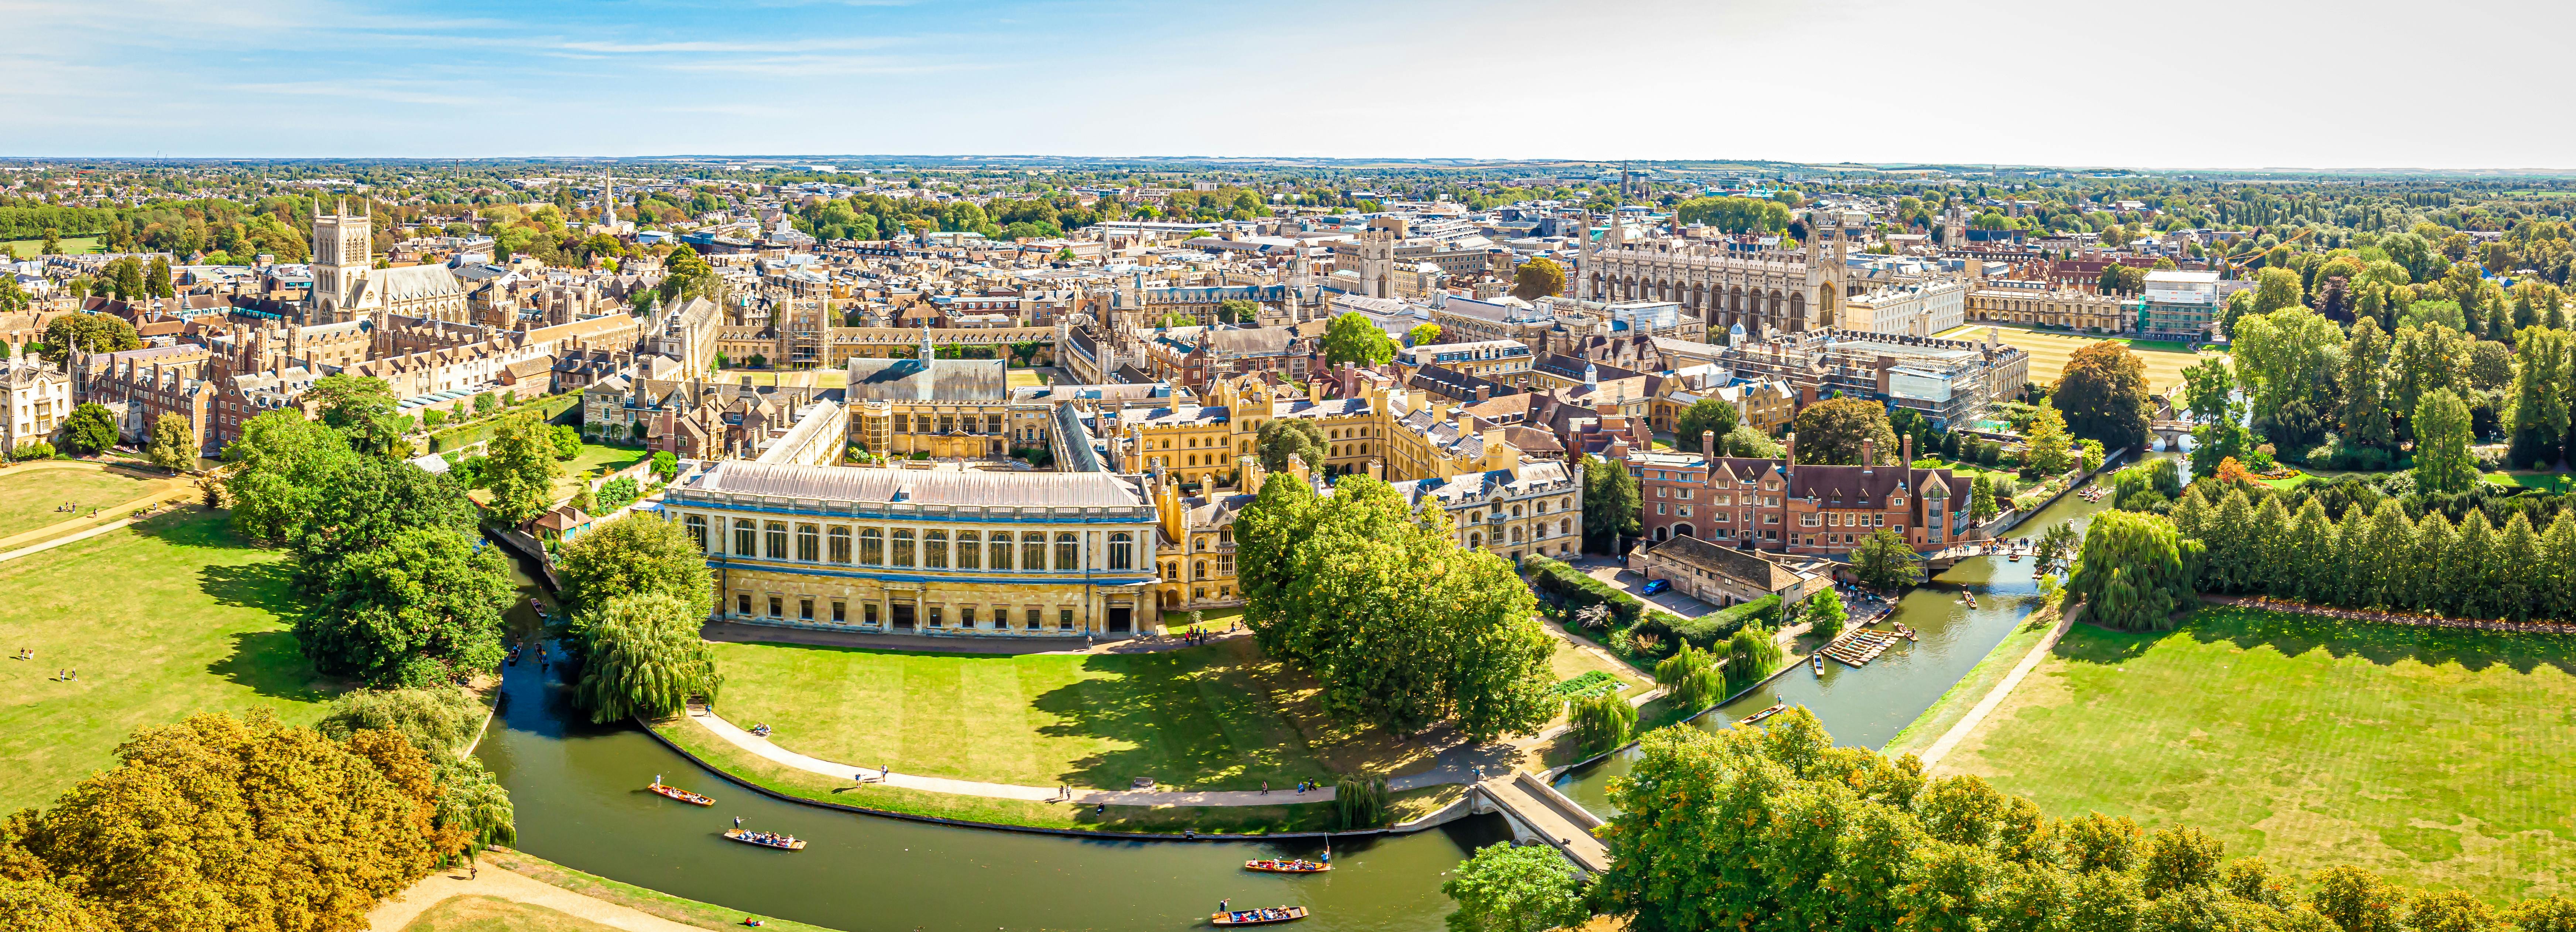 Universidade de Cambridge e passeio a pé pela cidade